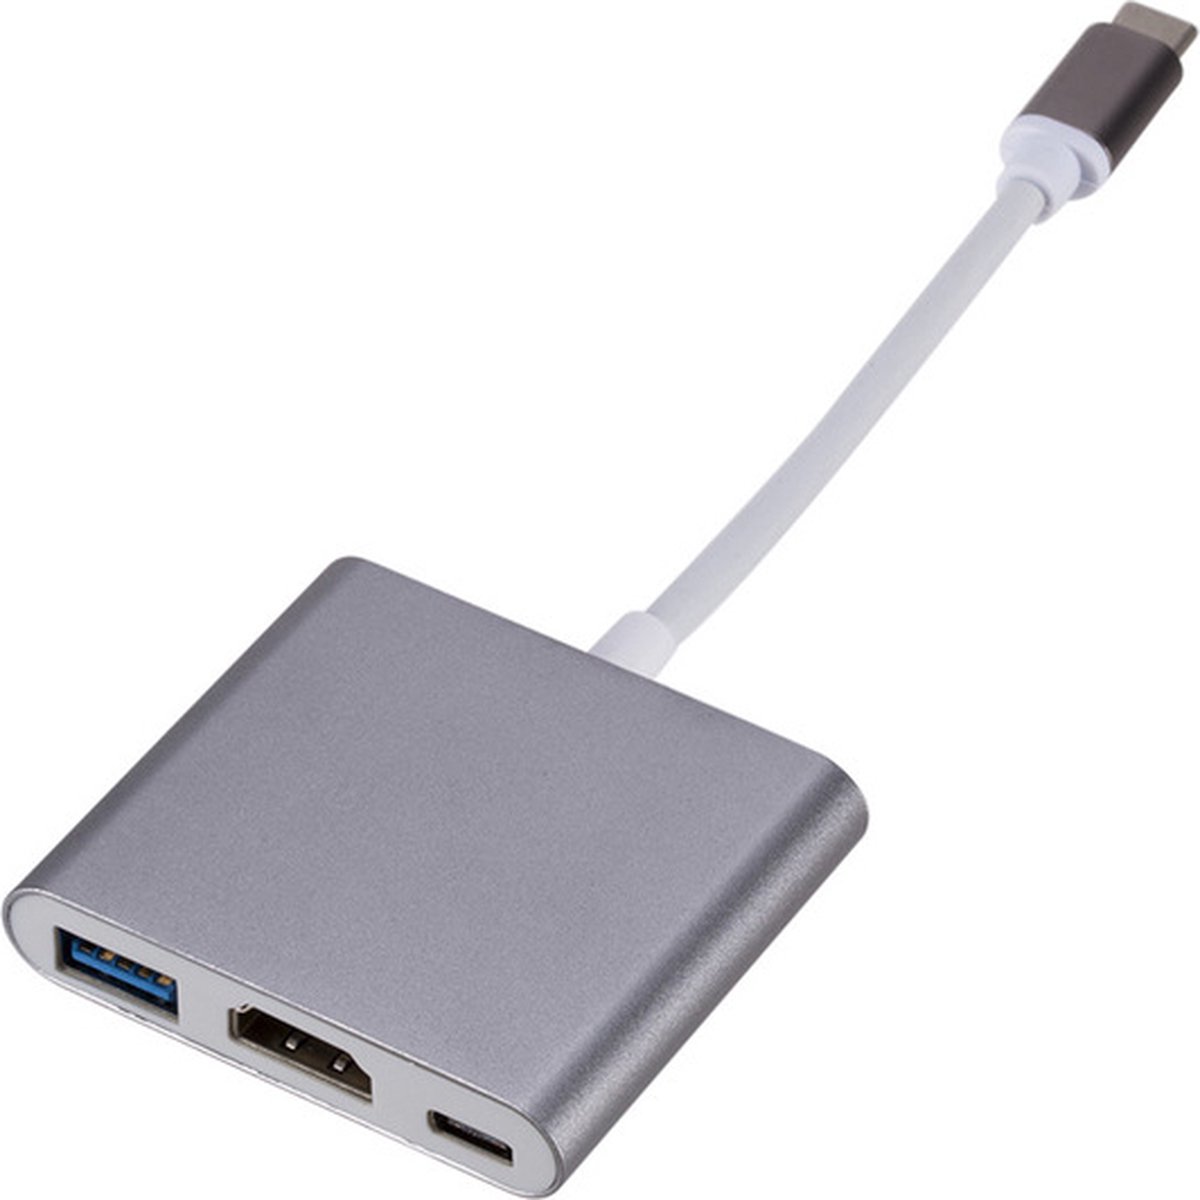 USB C Naar HDMI Adapter - 3 In 1 Adapter - Type-C to HDMI Converter - USB C HUB - USB C Naar USB C / USB 3.0 /HDMI